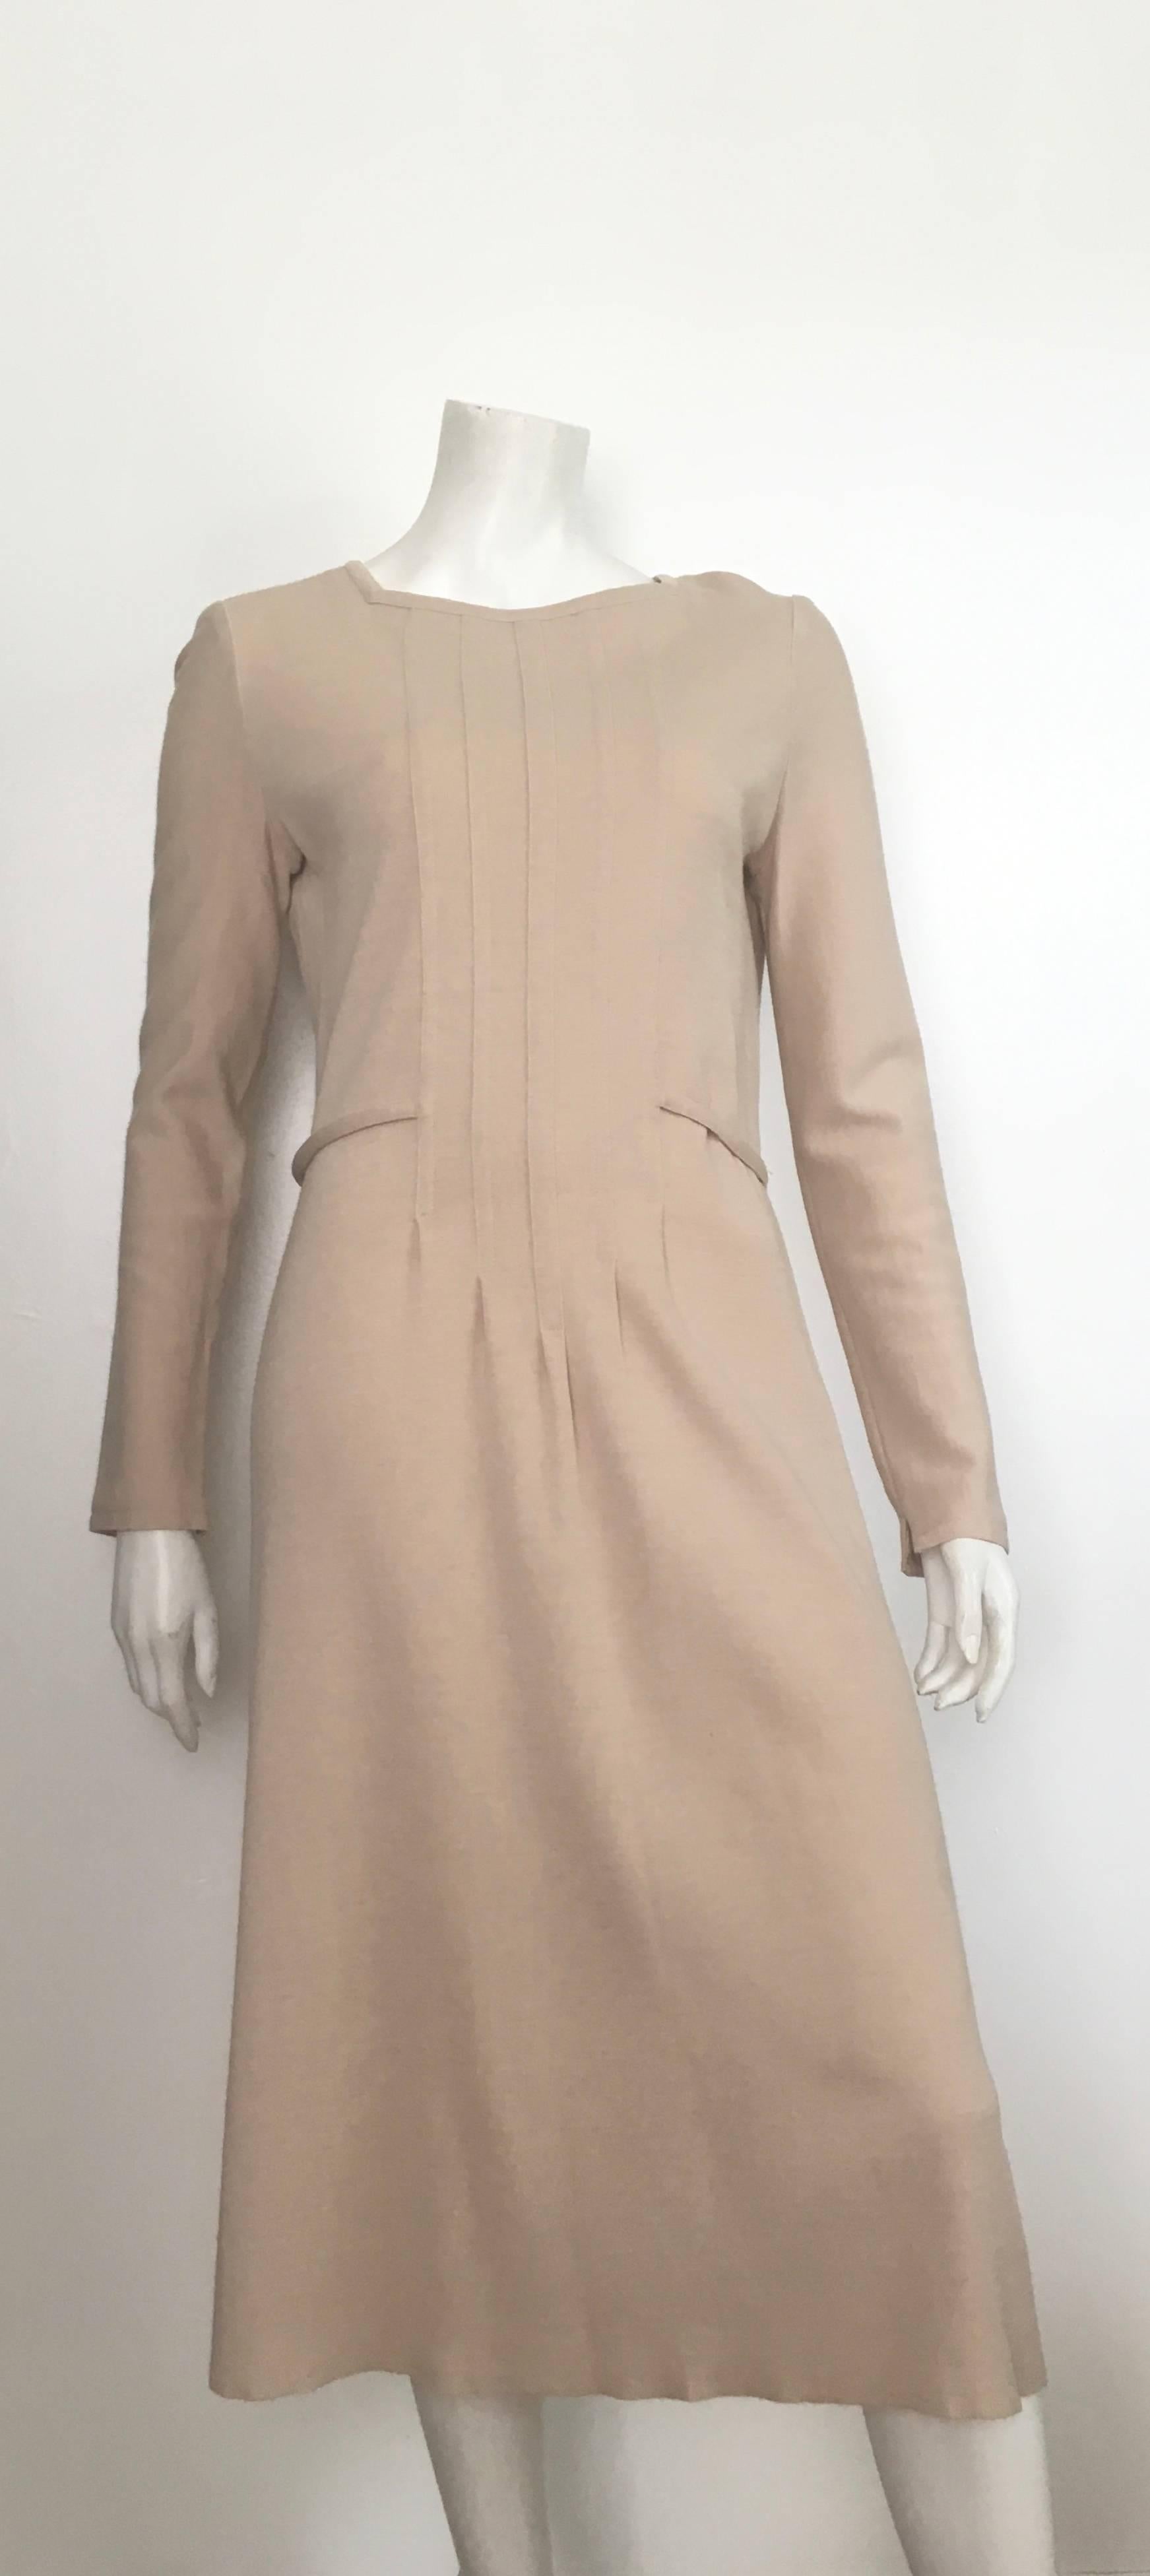 Women's or Men's Geoffrey Beene Boutique 1970s Wool Knit Tan Long Sleeve Dress Size 8. For Sale